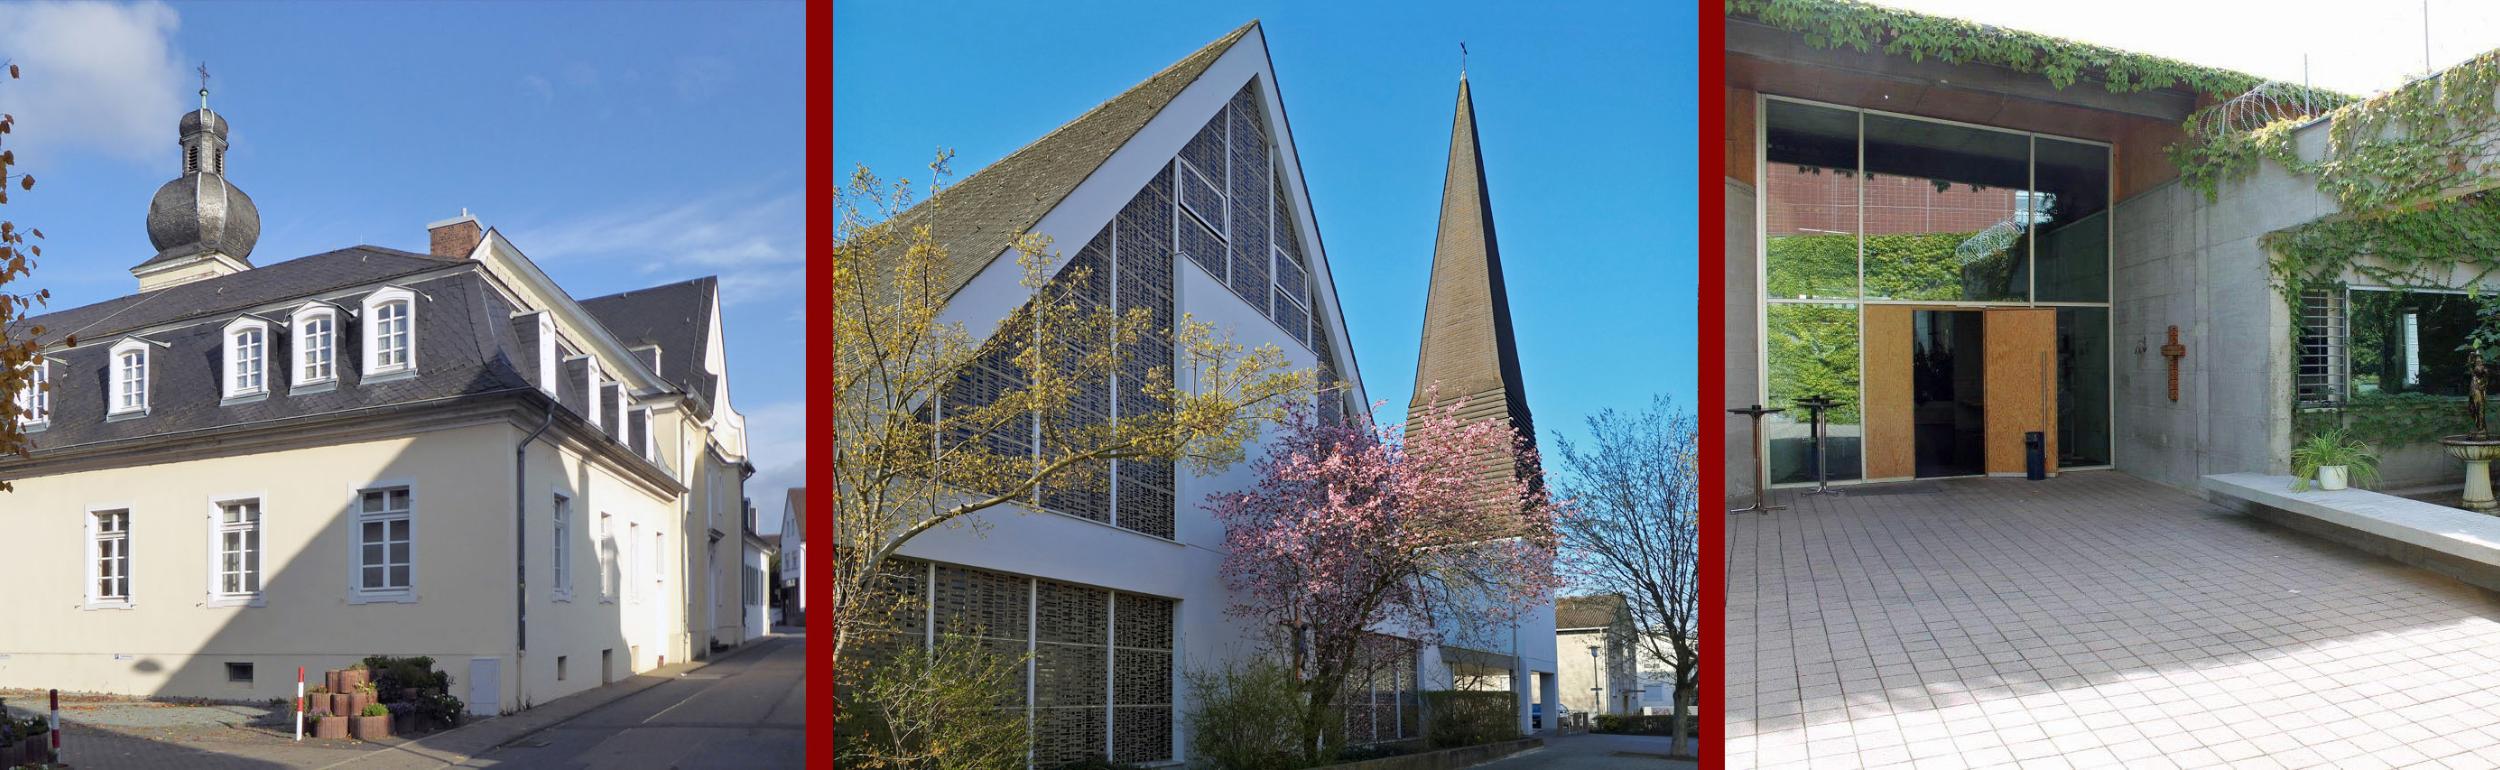 Kirchen in Weiterstadt